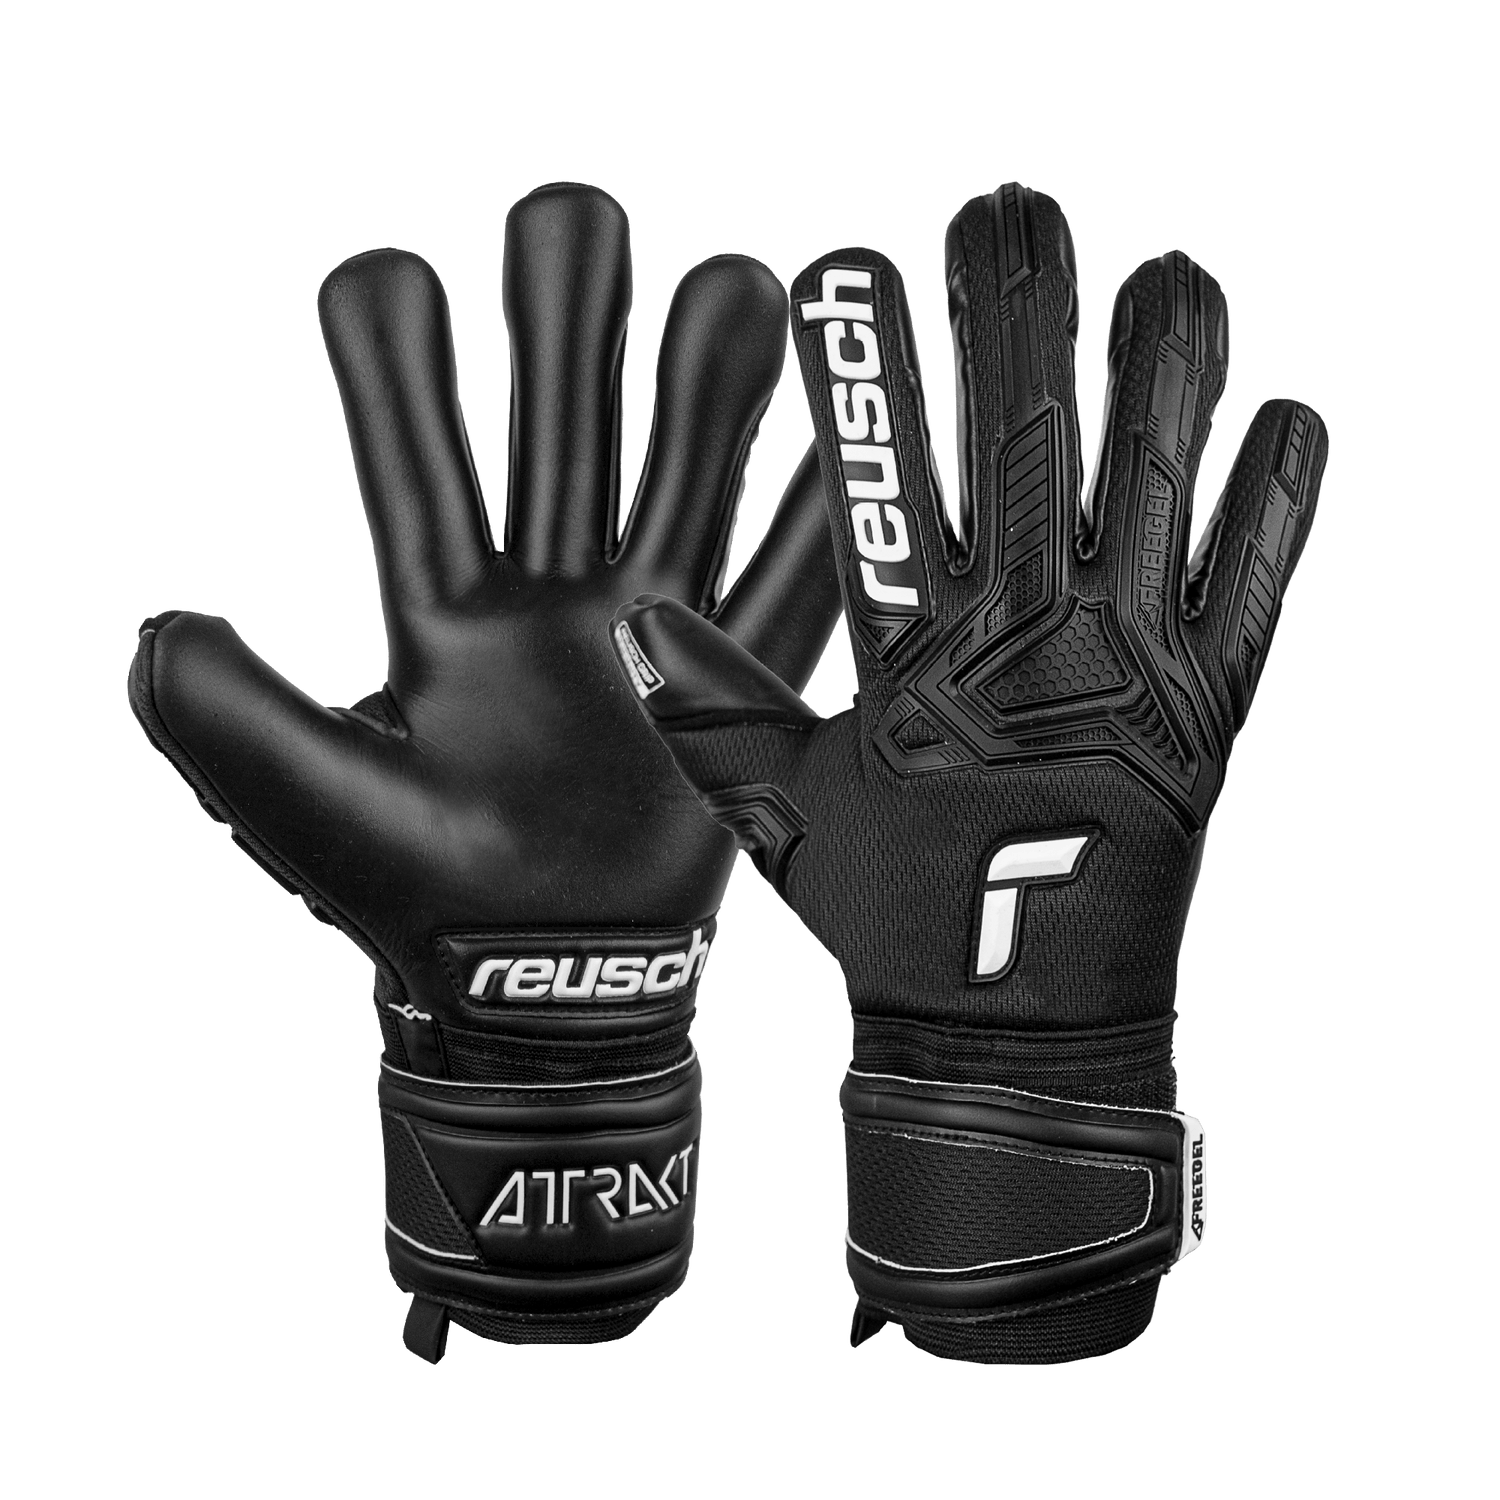 Reusch Attrakt Freegel Infinity FS Goalkeeper Glove - Black